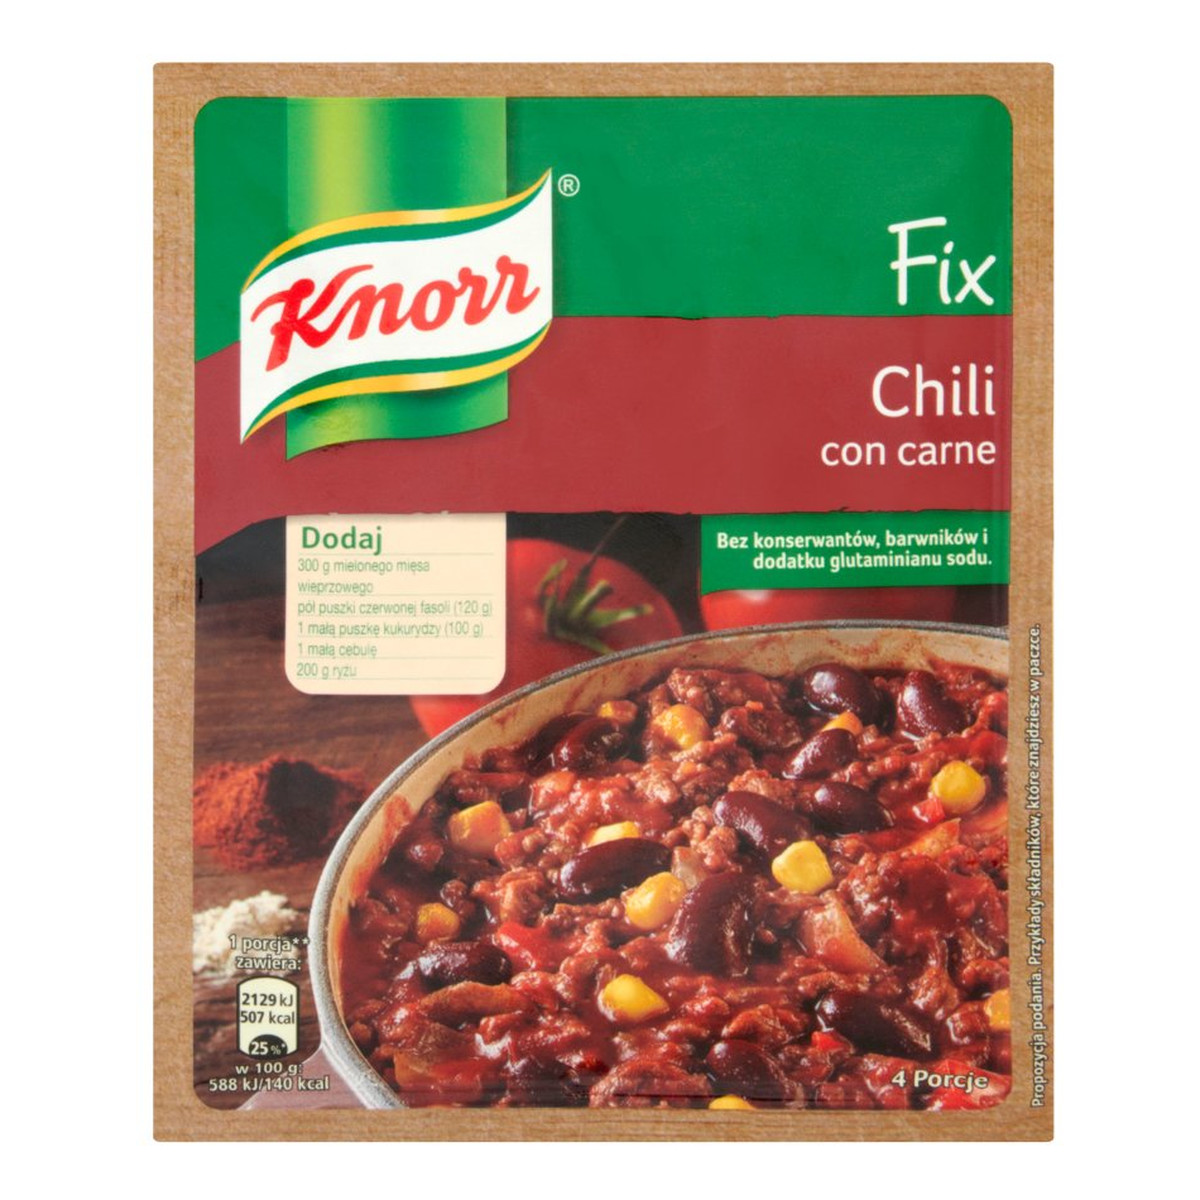 Knorr Fix Chili con carne 37g